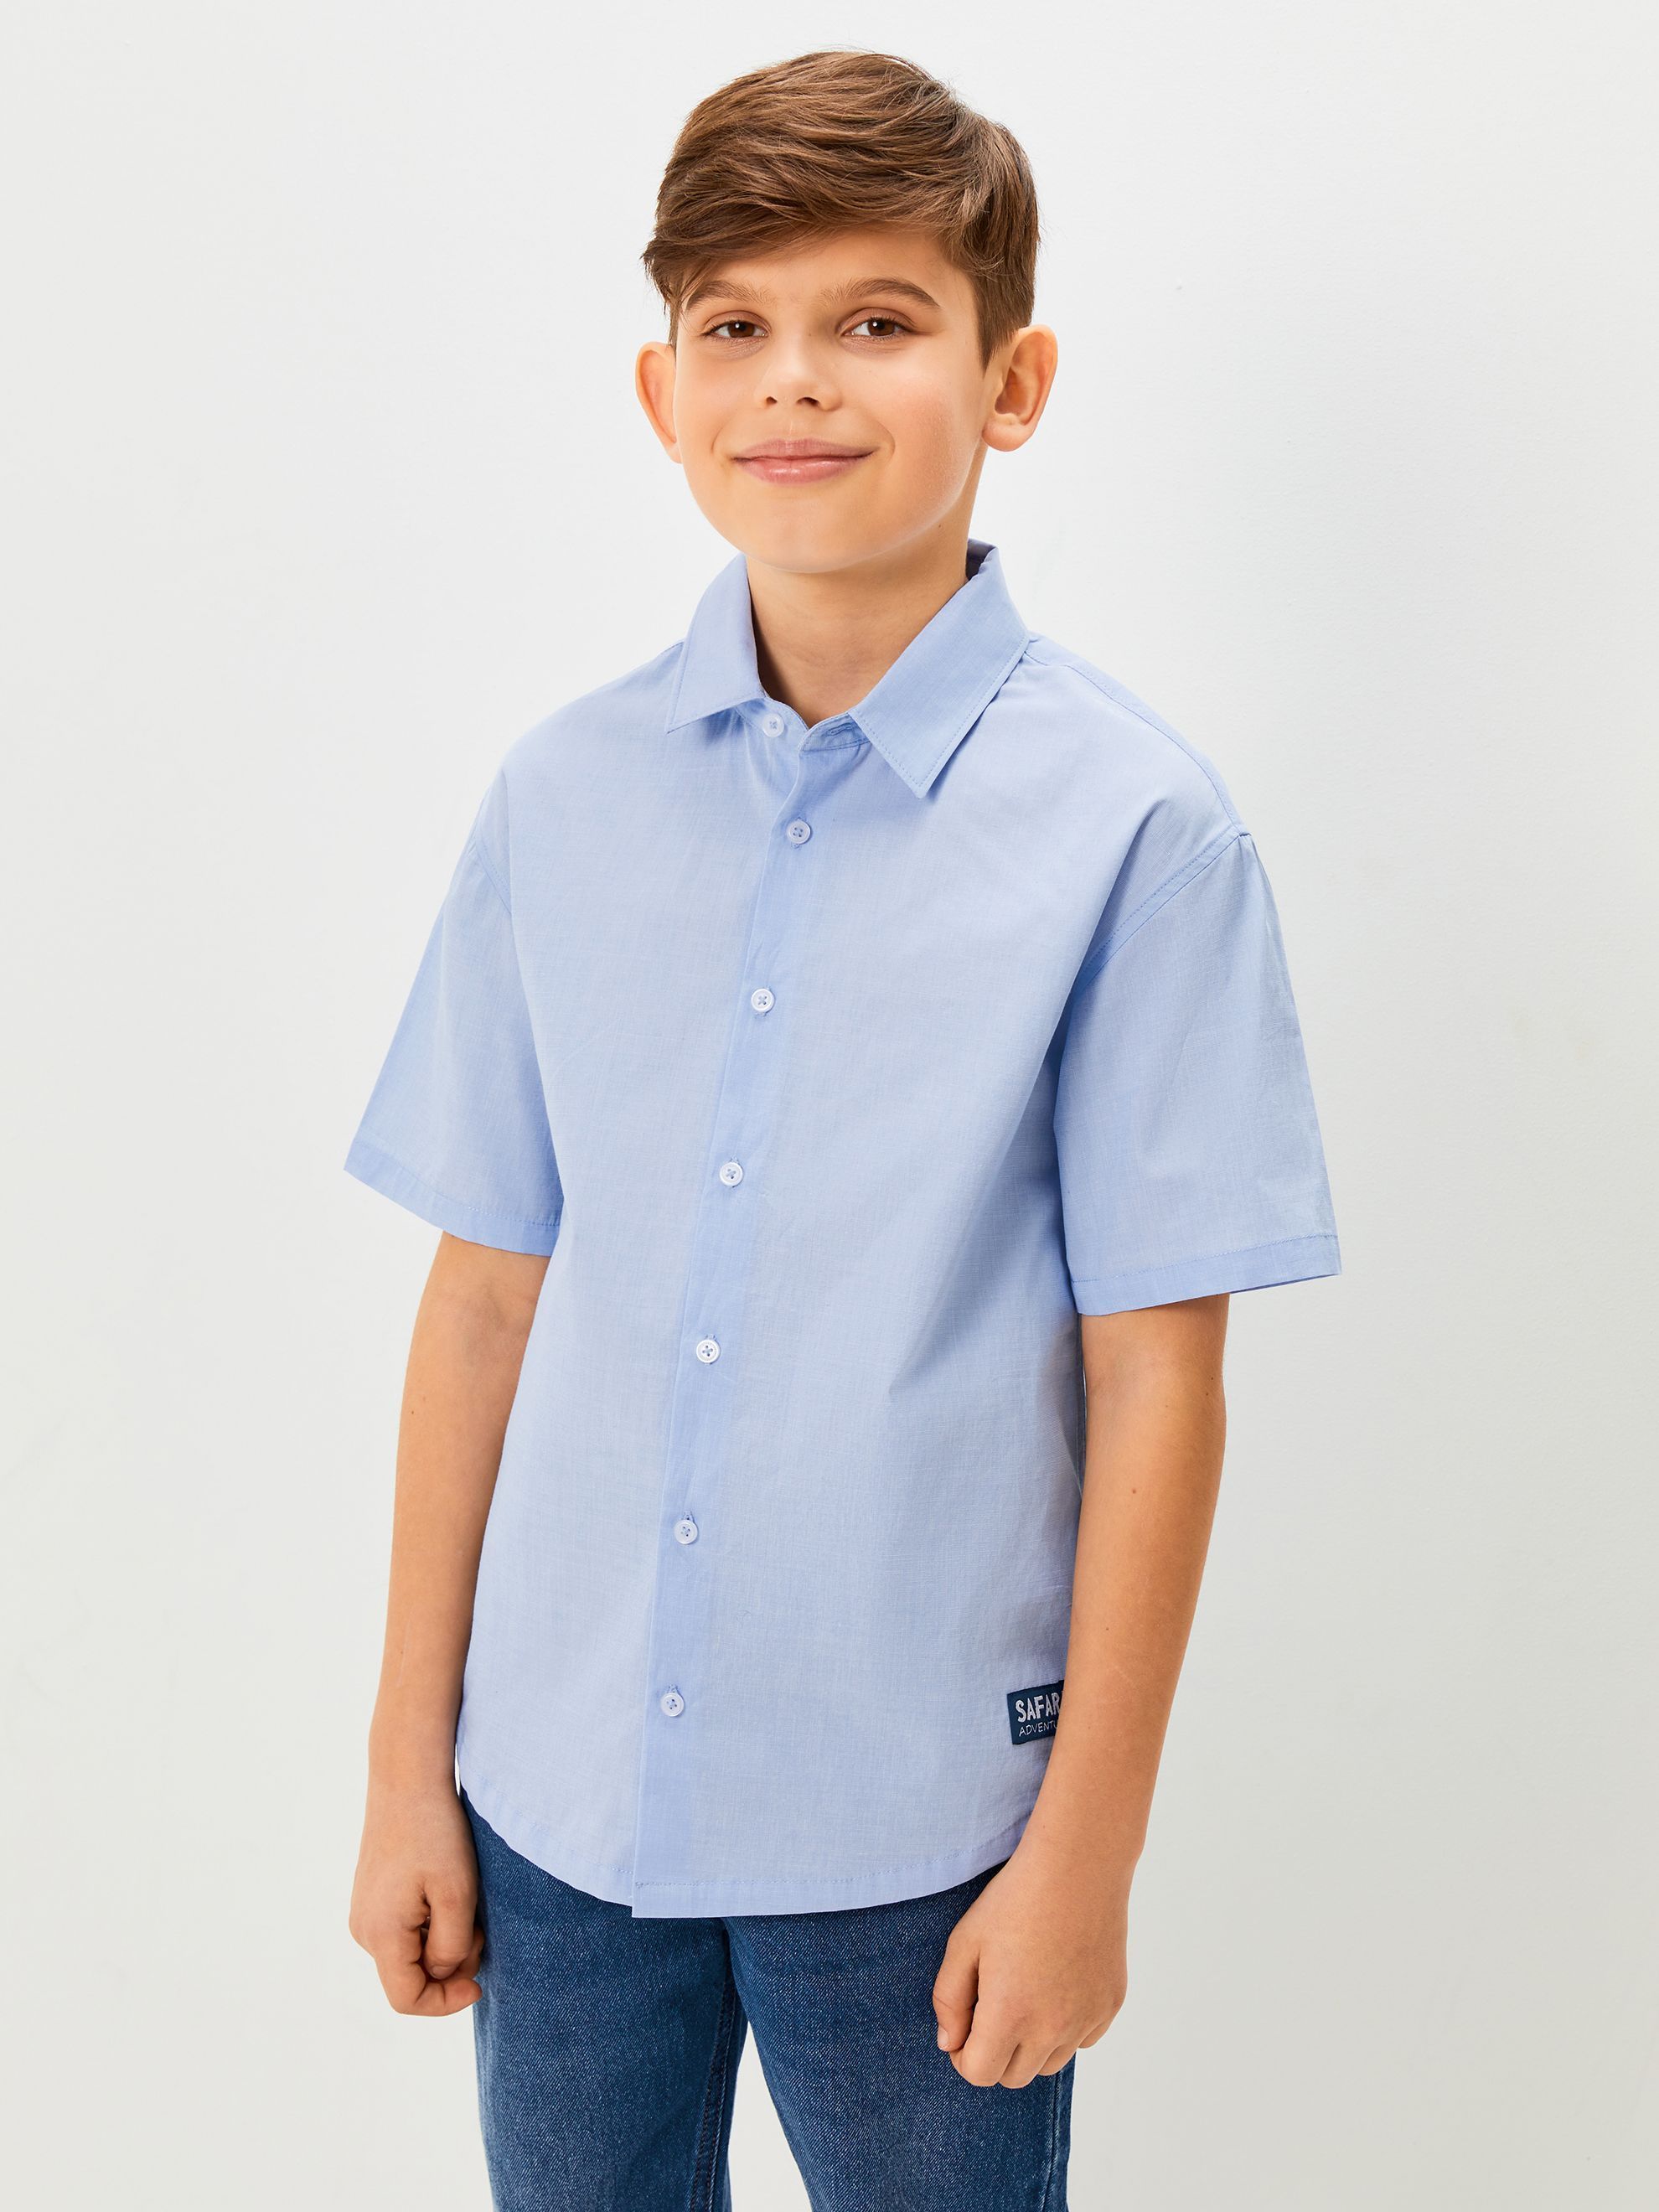 Рубашка для мальчика 158-164